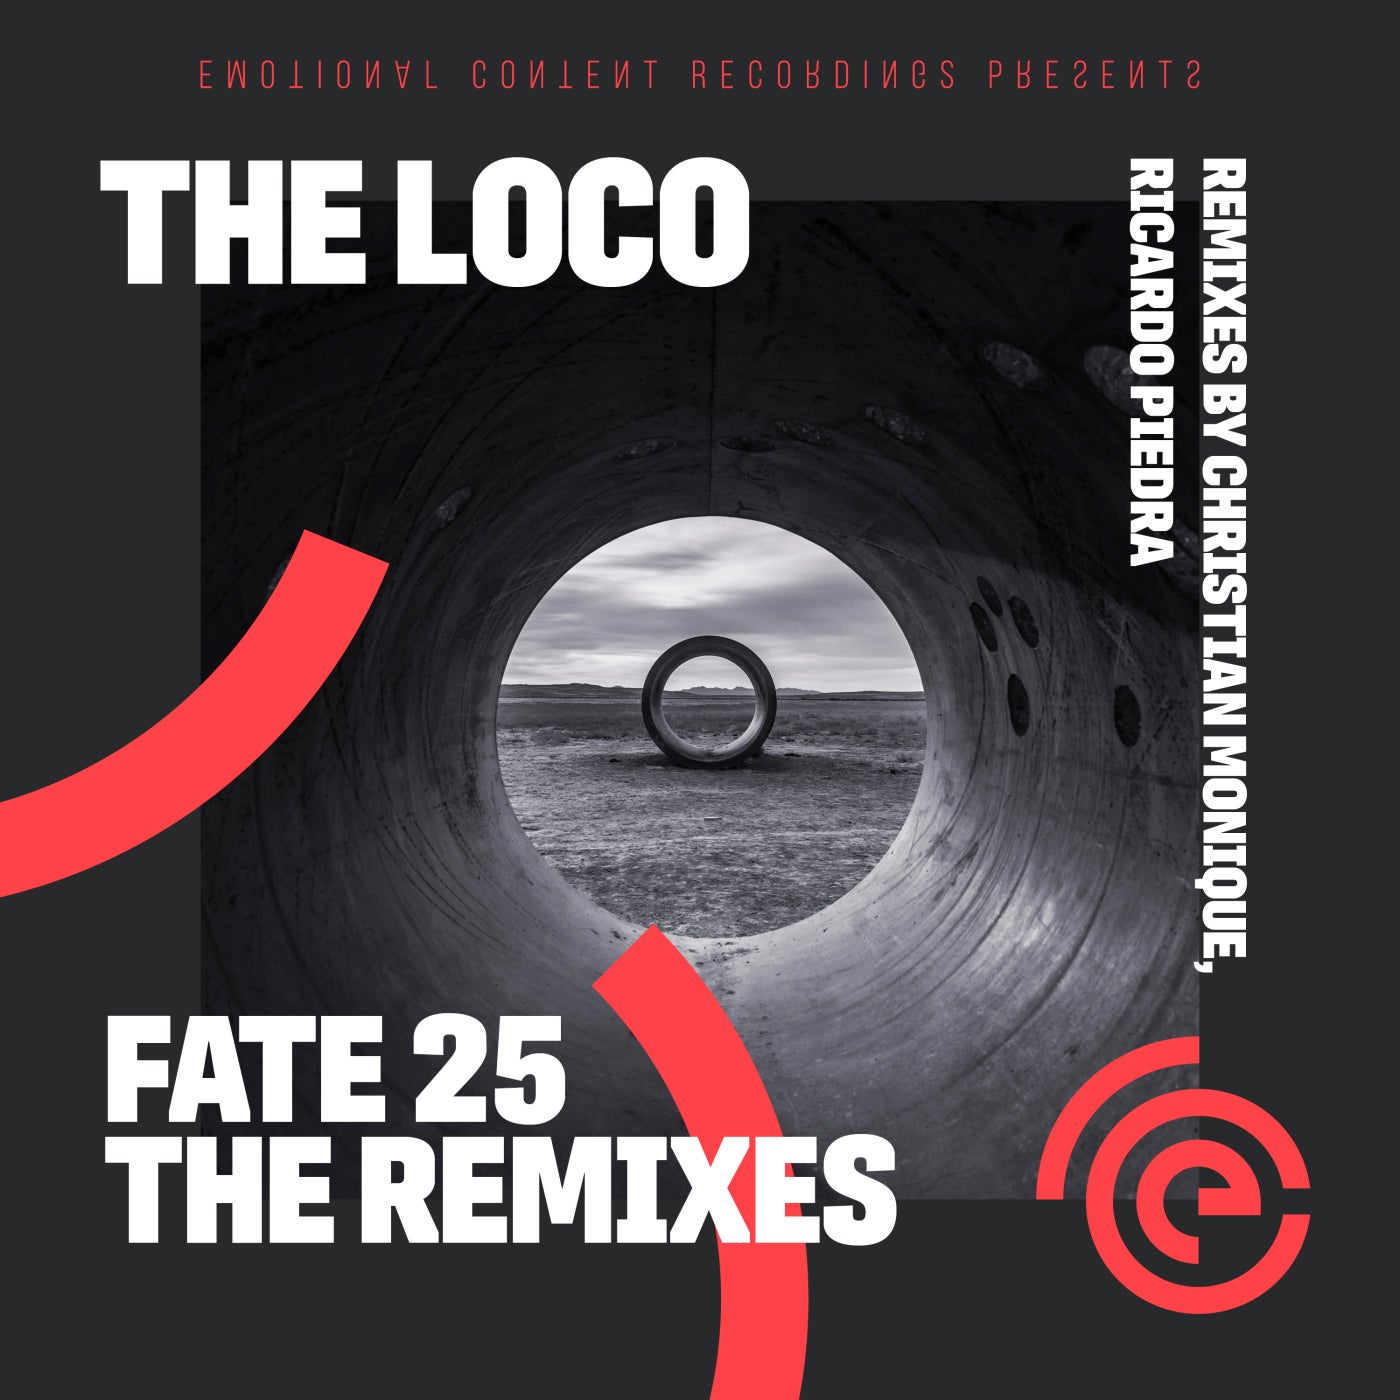 The Loco - Fate 25 (Christian Monique Remix)